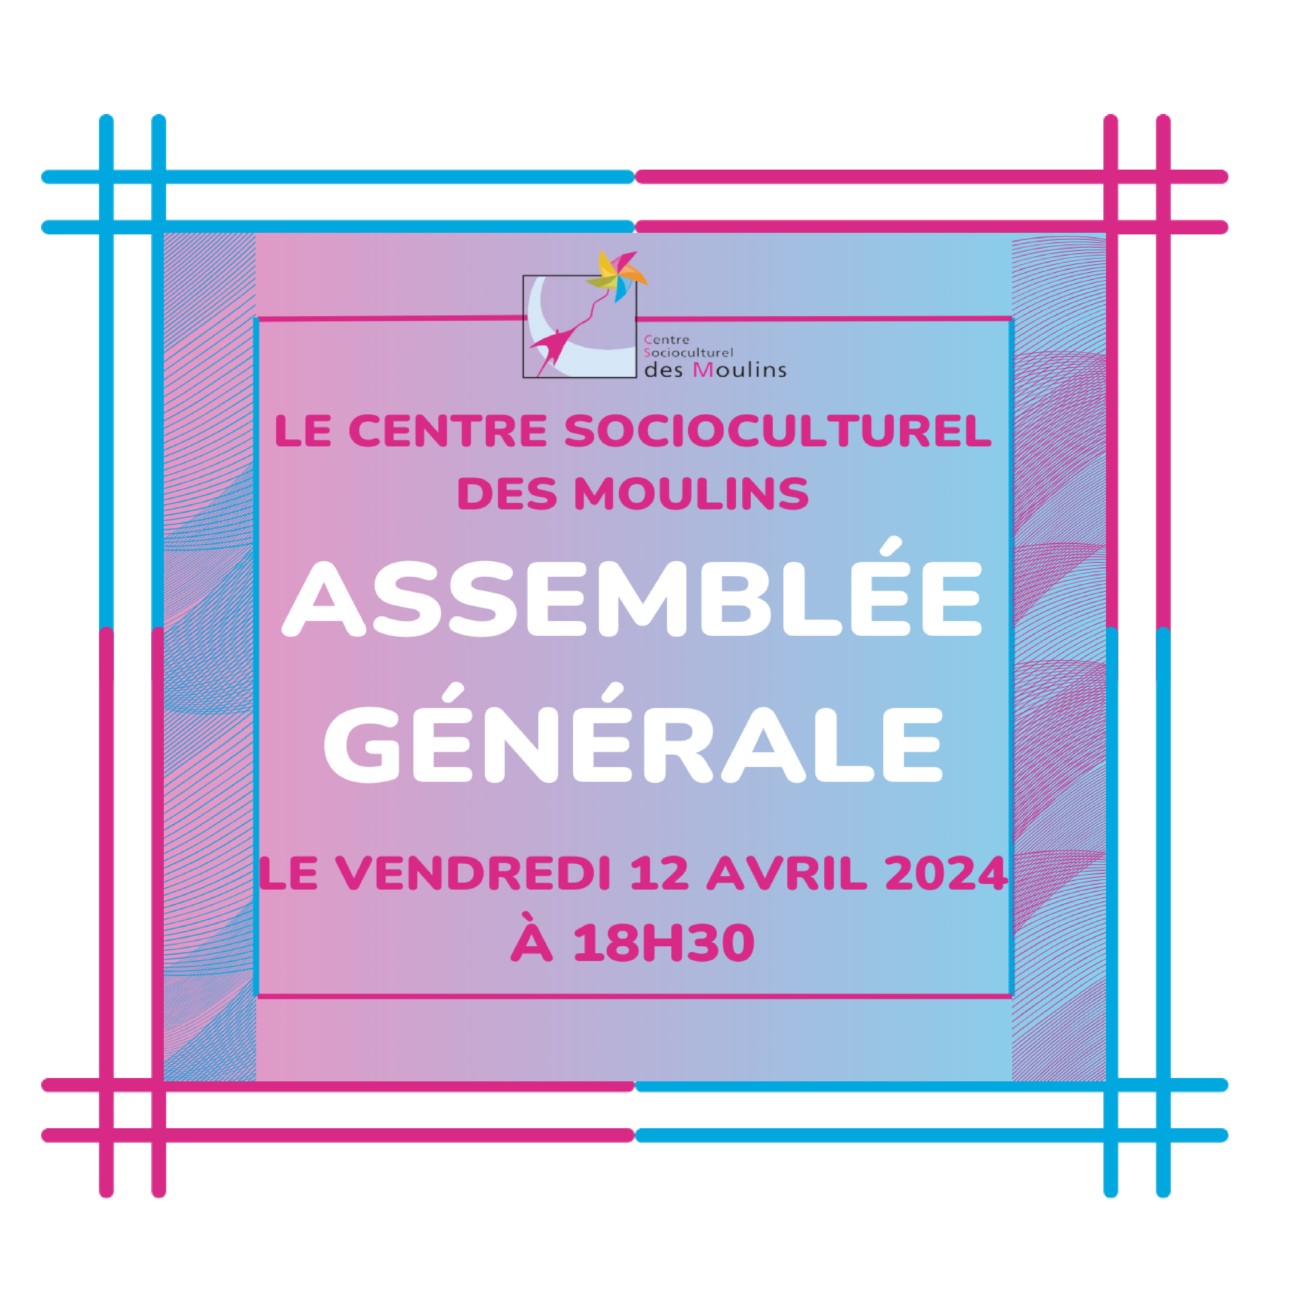 Rejoignez-nous pour notre Assemblée Générale au Centre Socioculturel des Moulins!